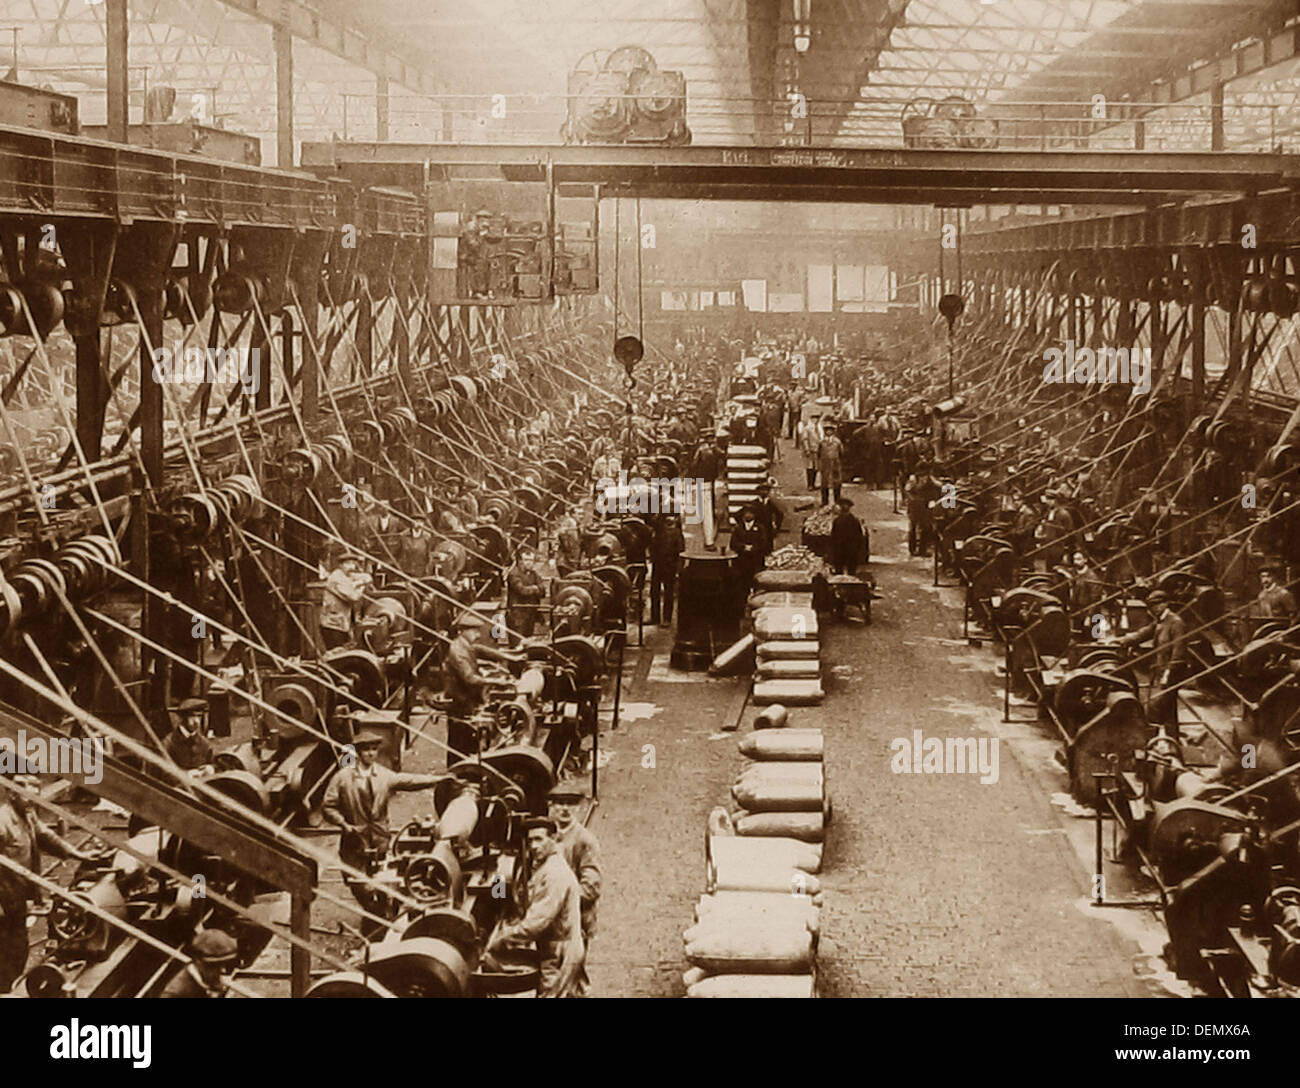 La fabrique de munitions pendant la WW1 Banque D'Images